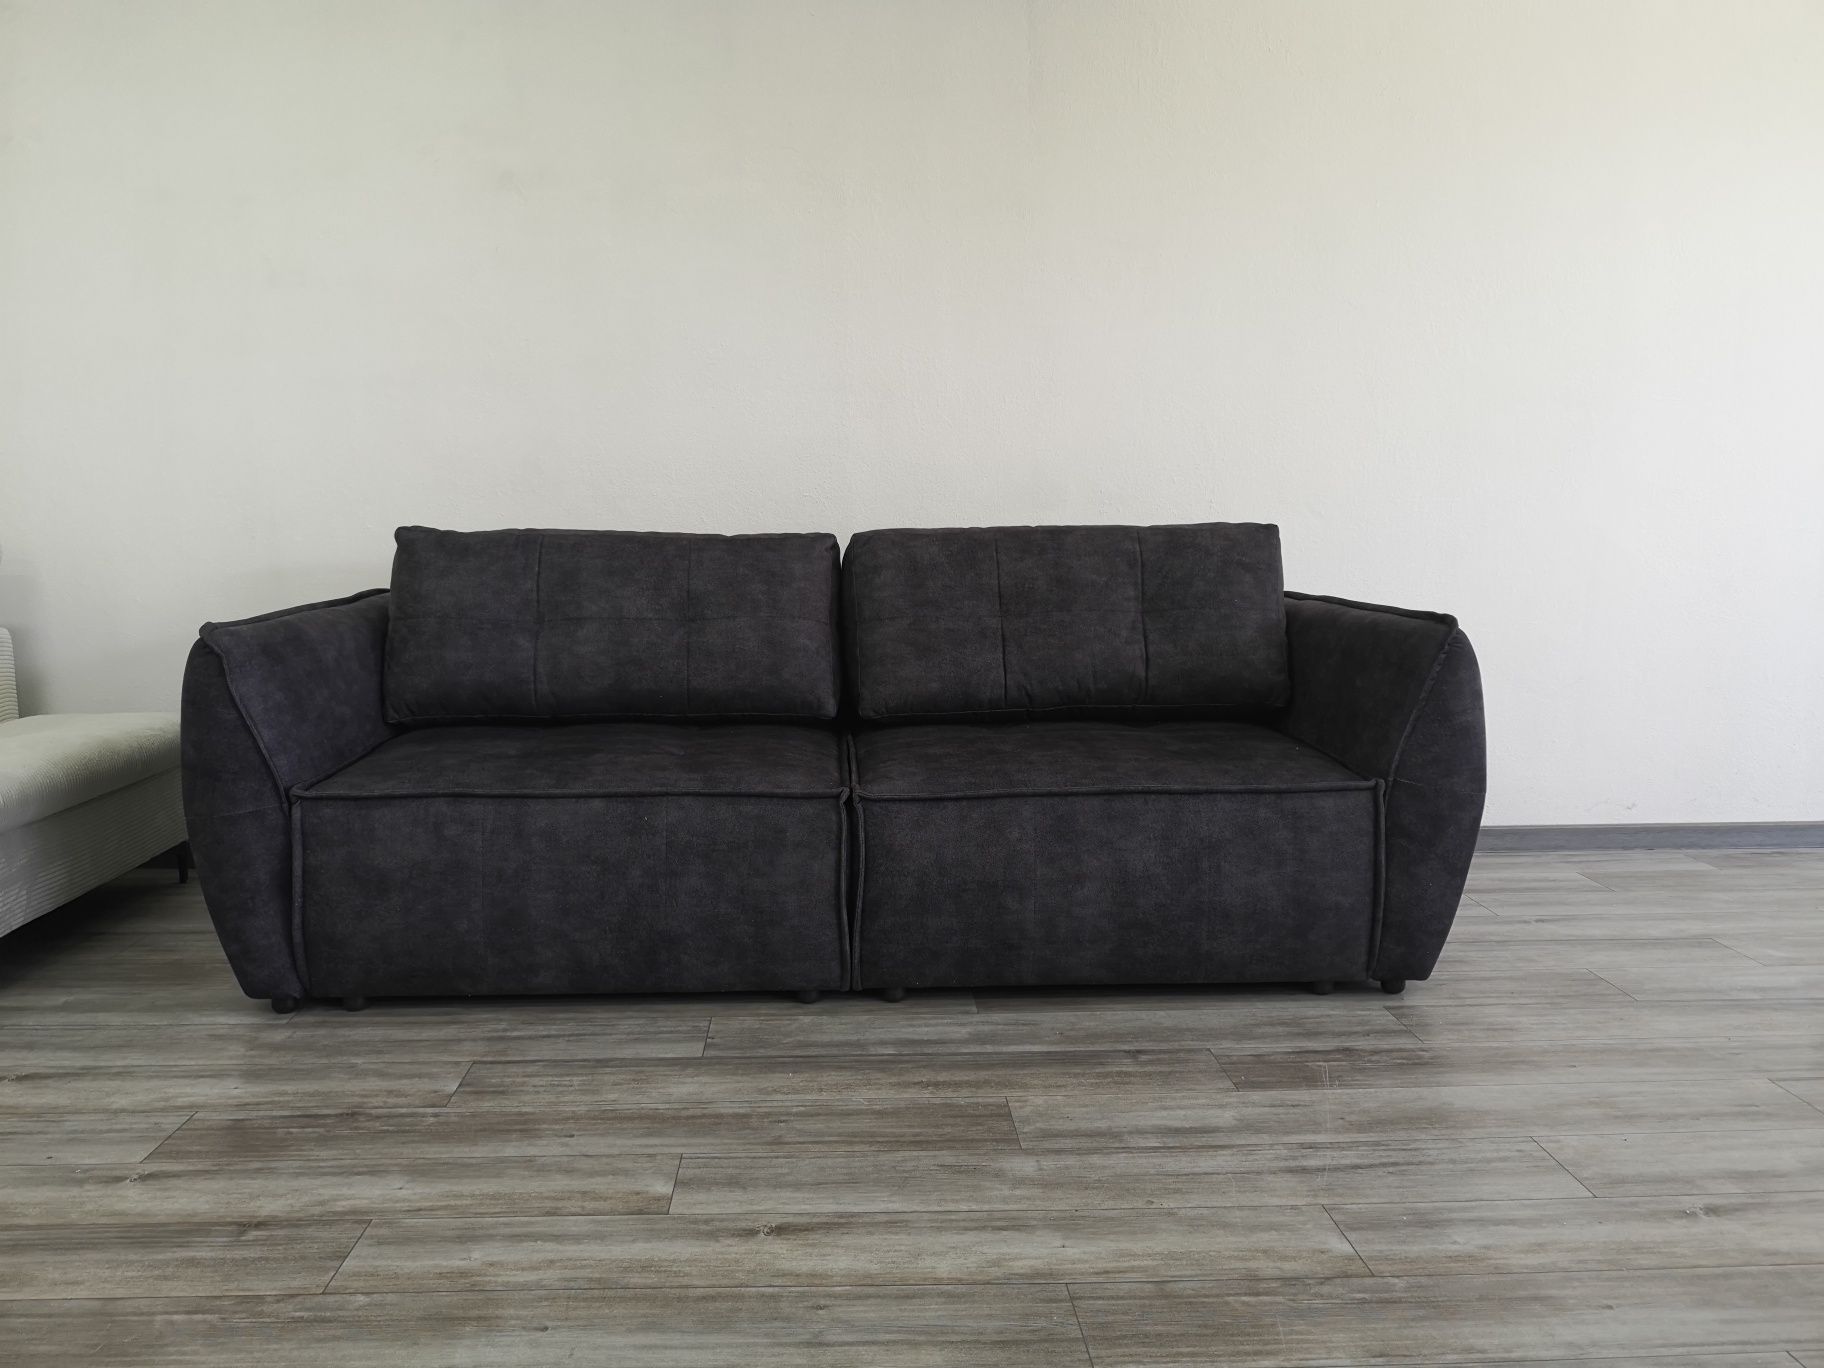 Sofa 4w1 sofa, narożnik, big sofa łóżko wszystko w 1 kanapie